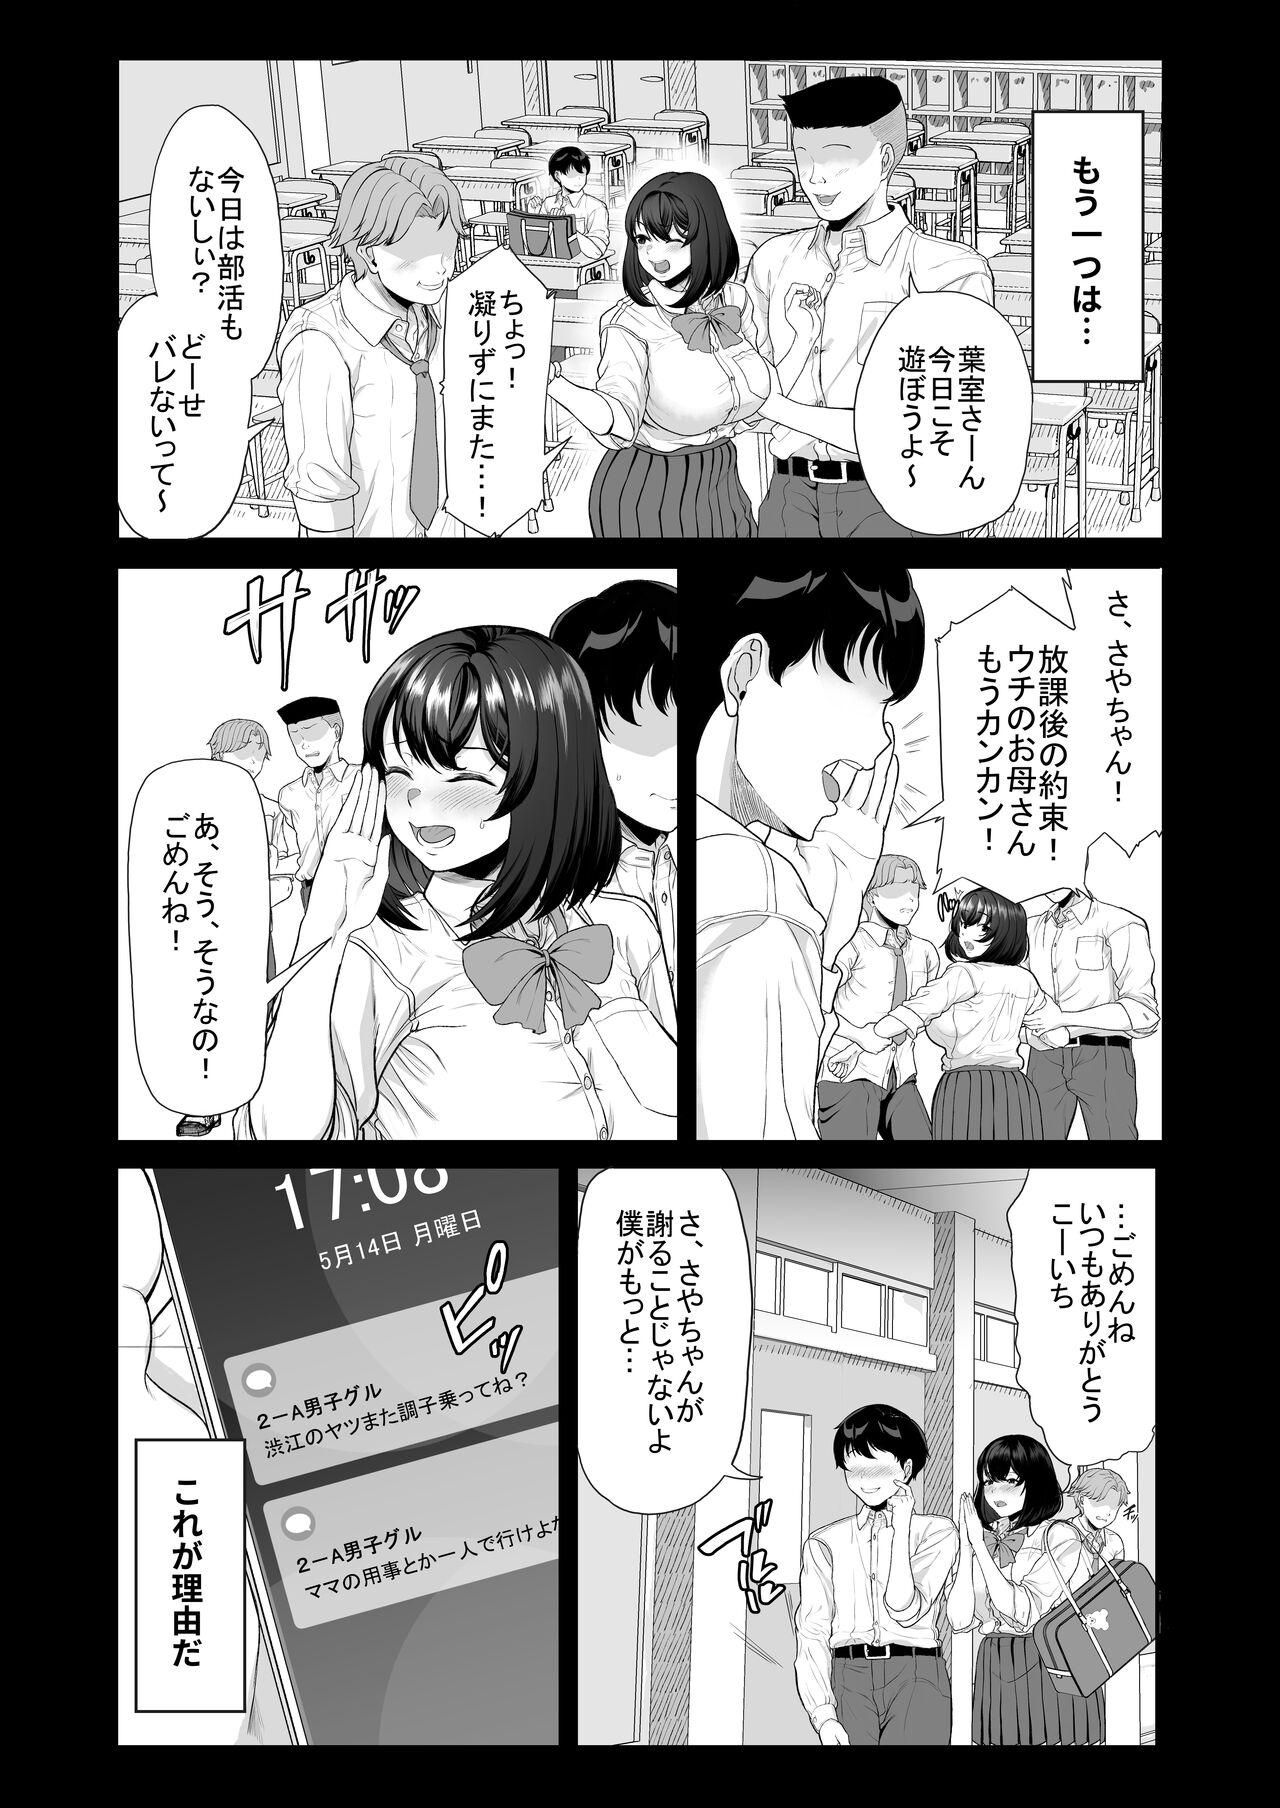 Teamskeet Suieibuno kanojoga shinyuuwo kobamenakunaru katei - Original Cuzinho - Page 6